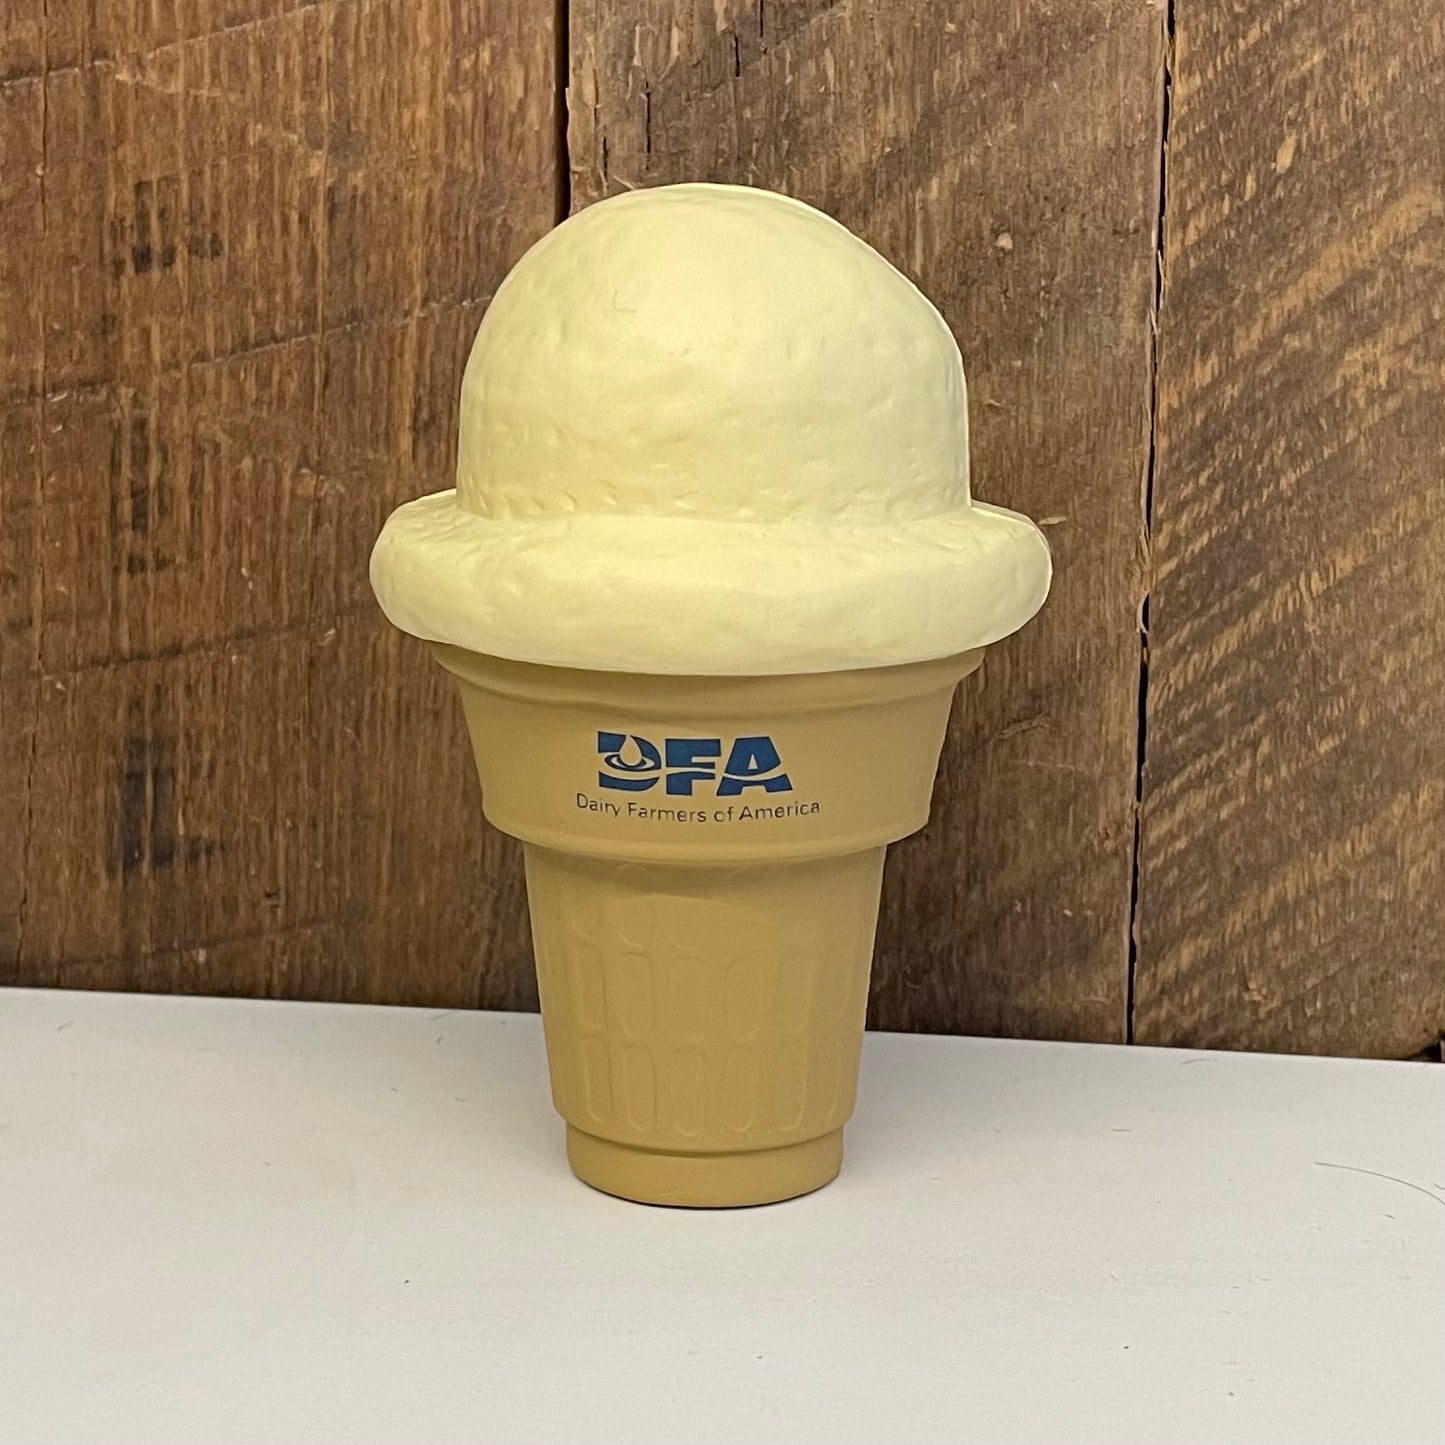 Ice cream cone stress reliever